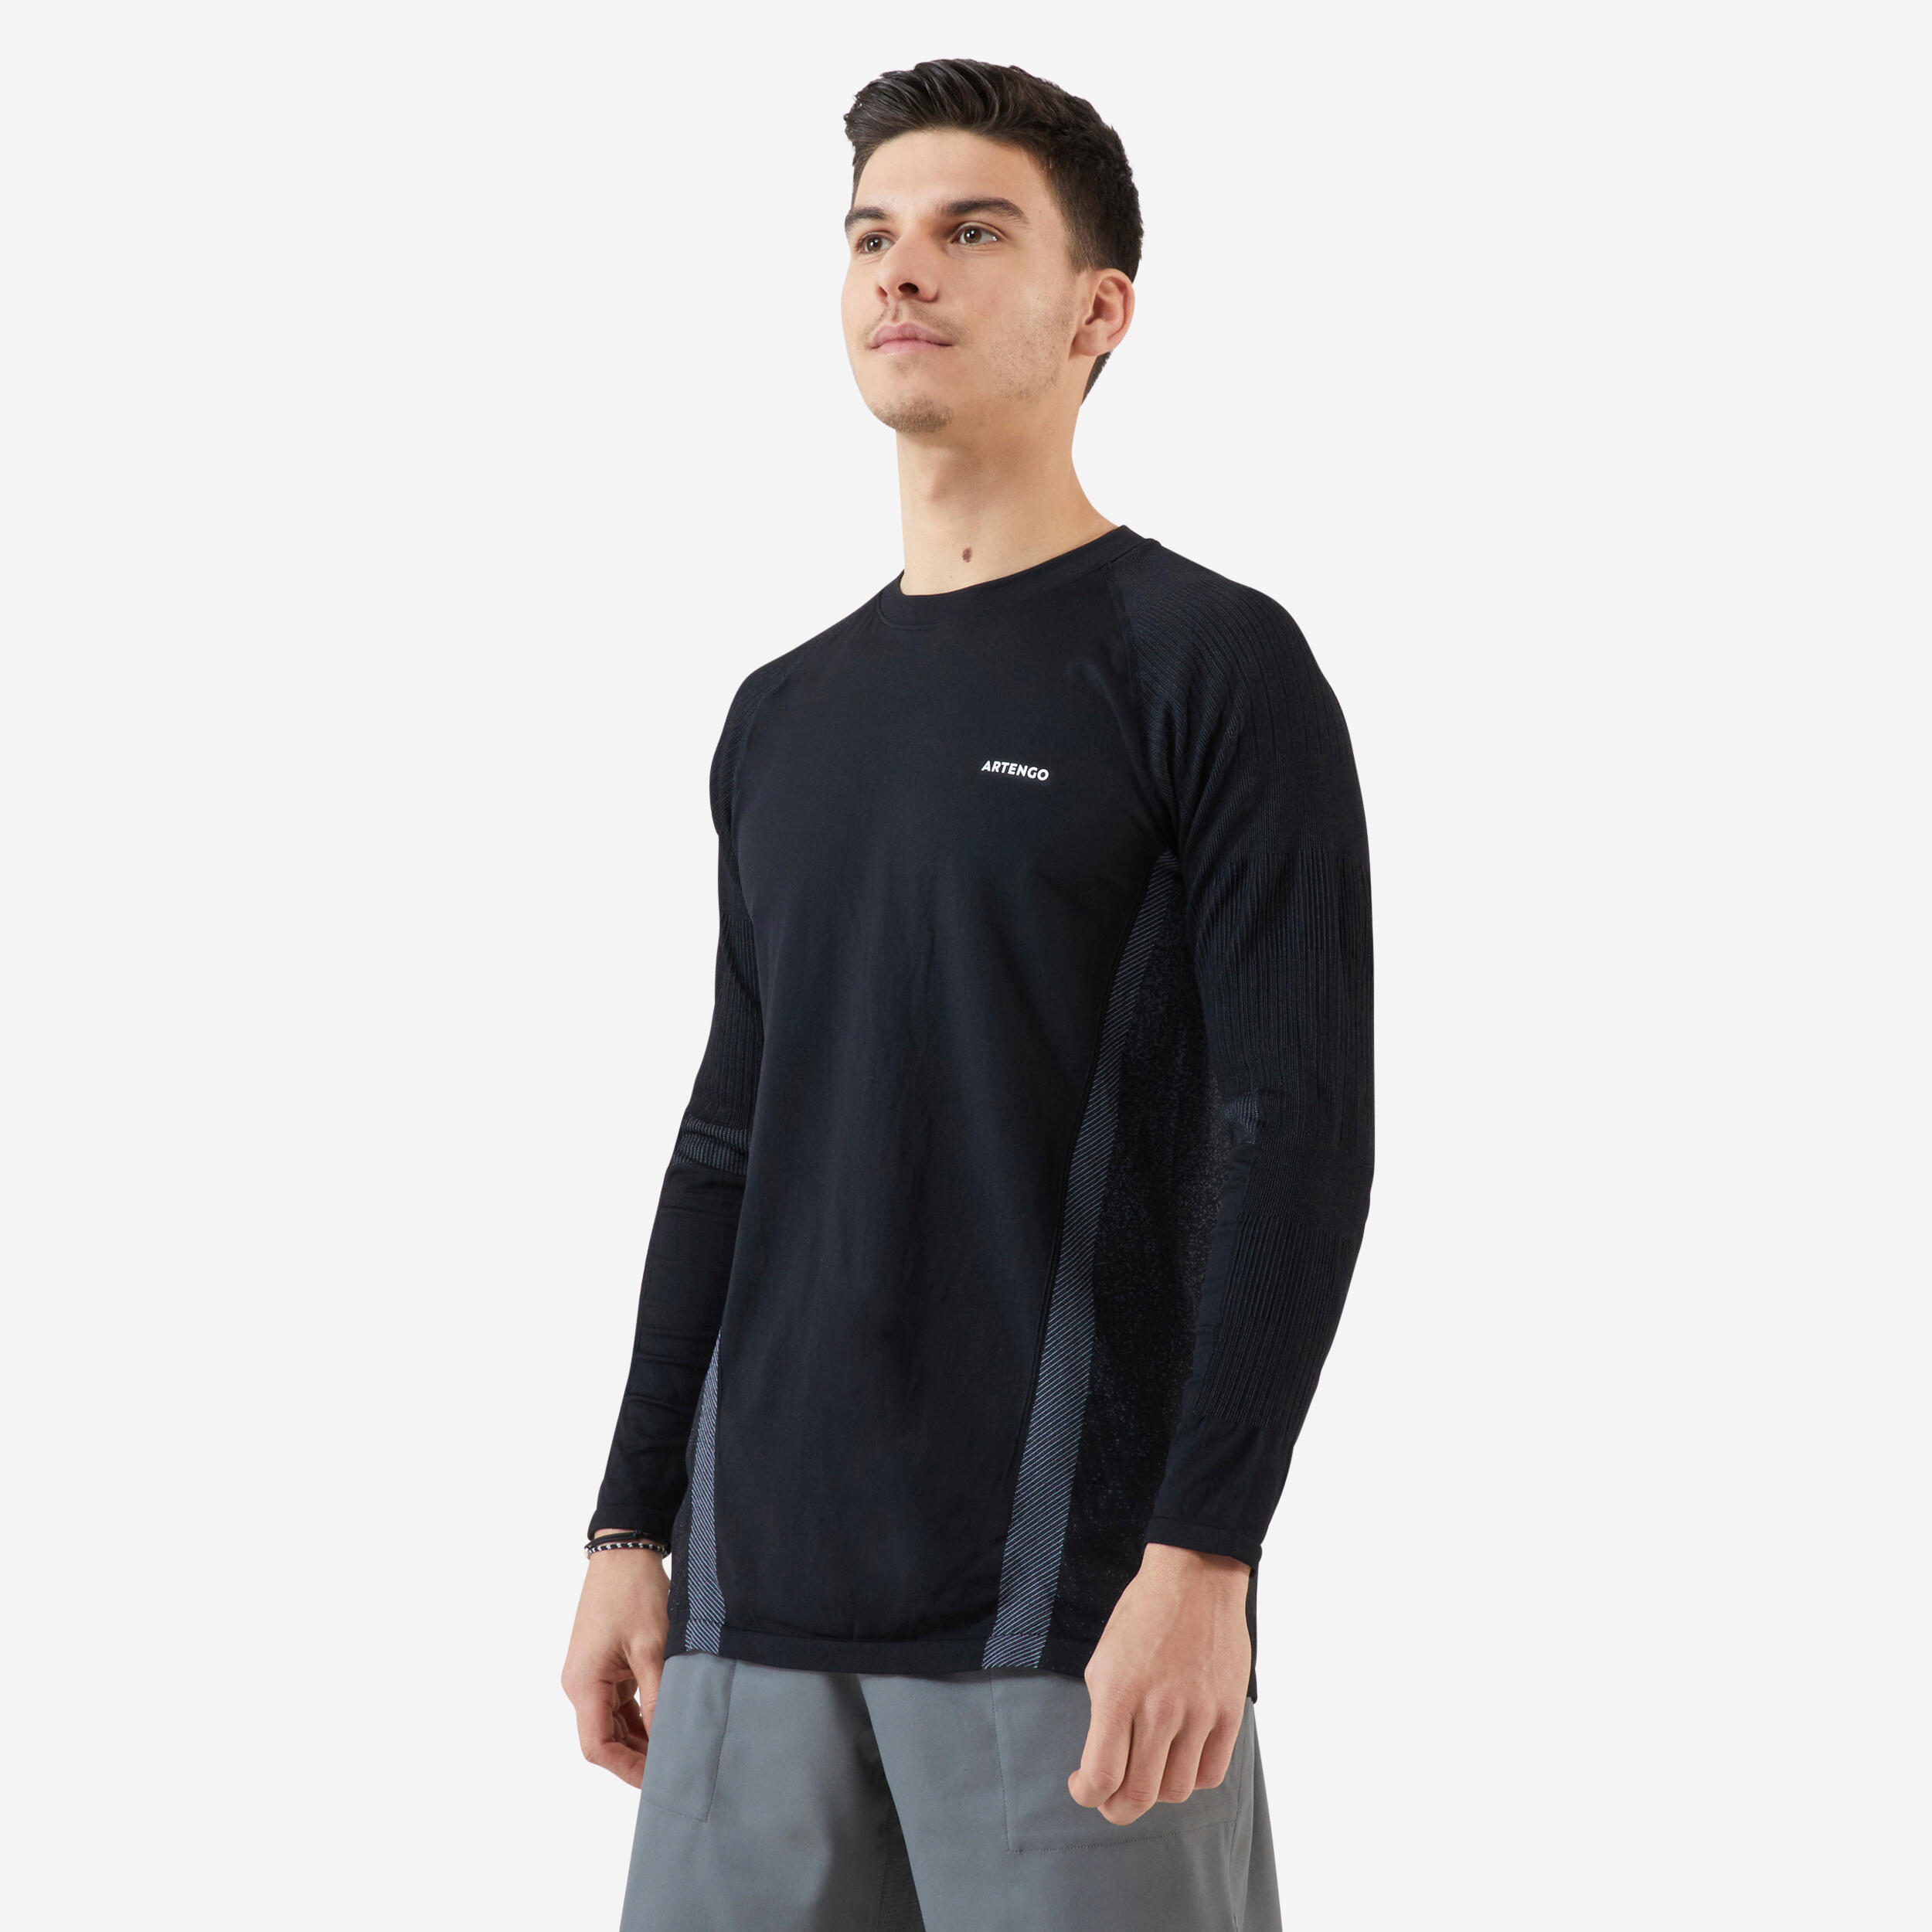 ARTENGO T-Shirt Tennis Manches Longues Homme - Thermic Noir